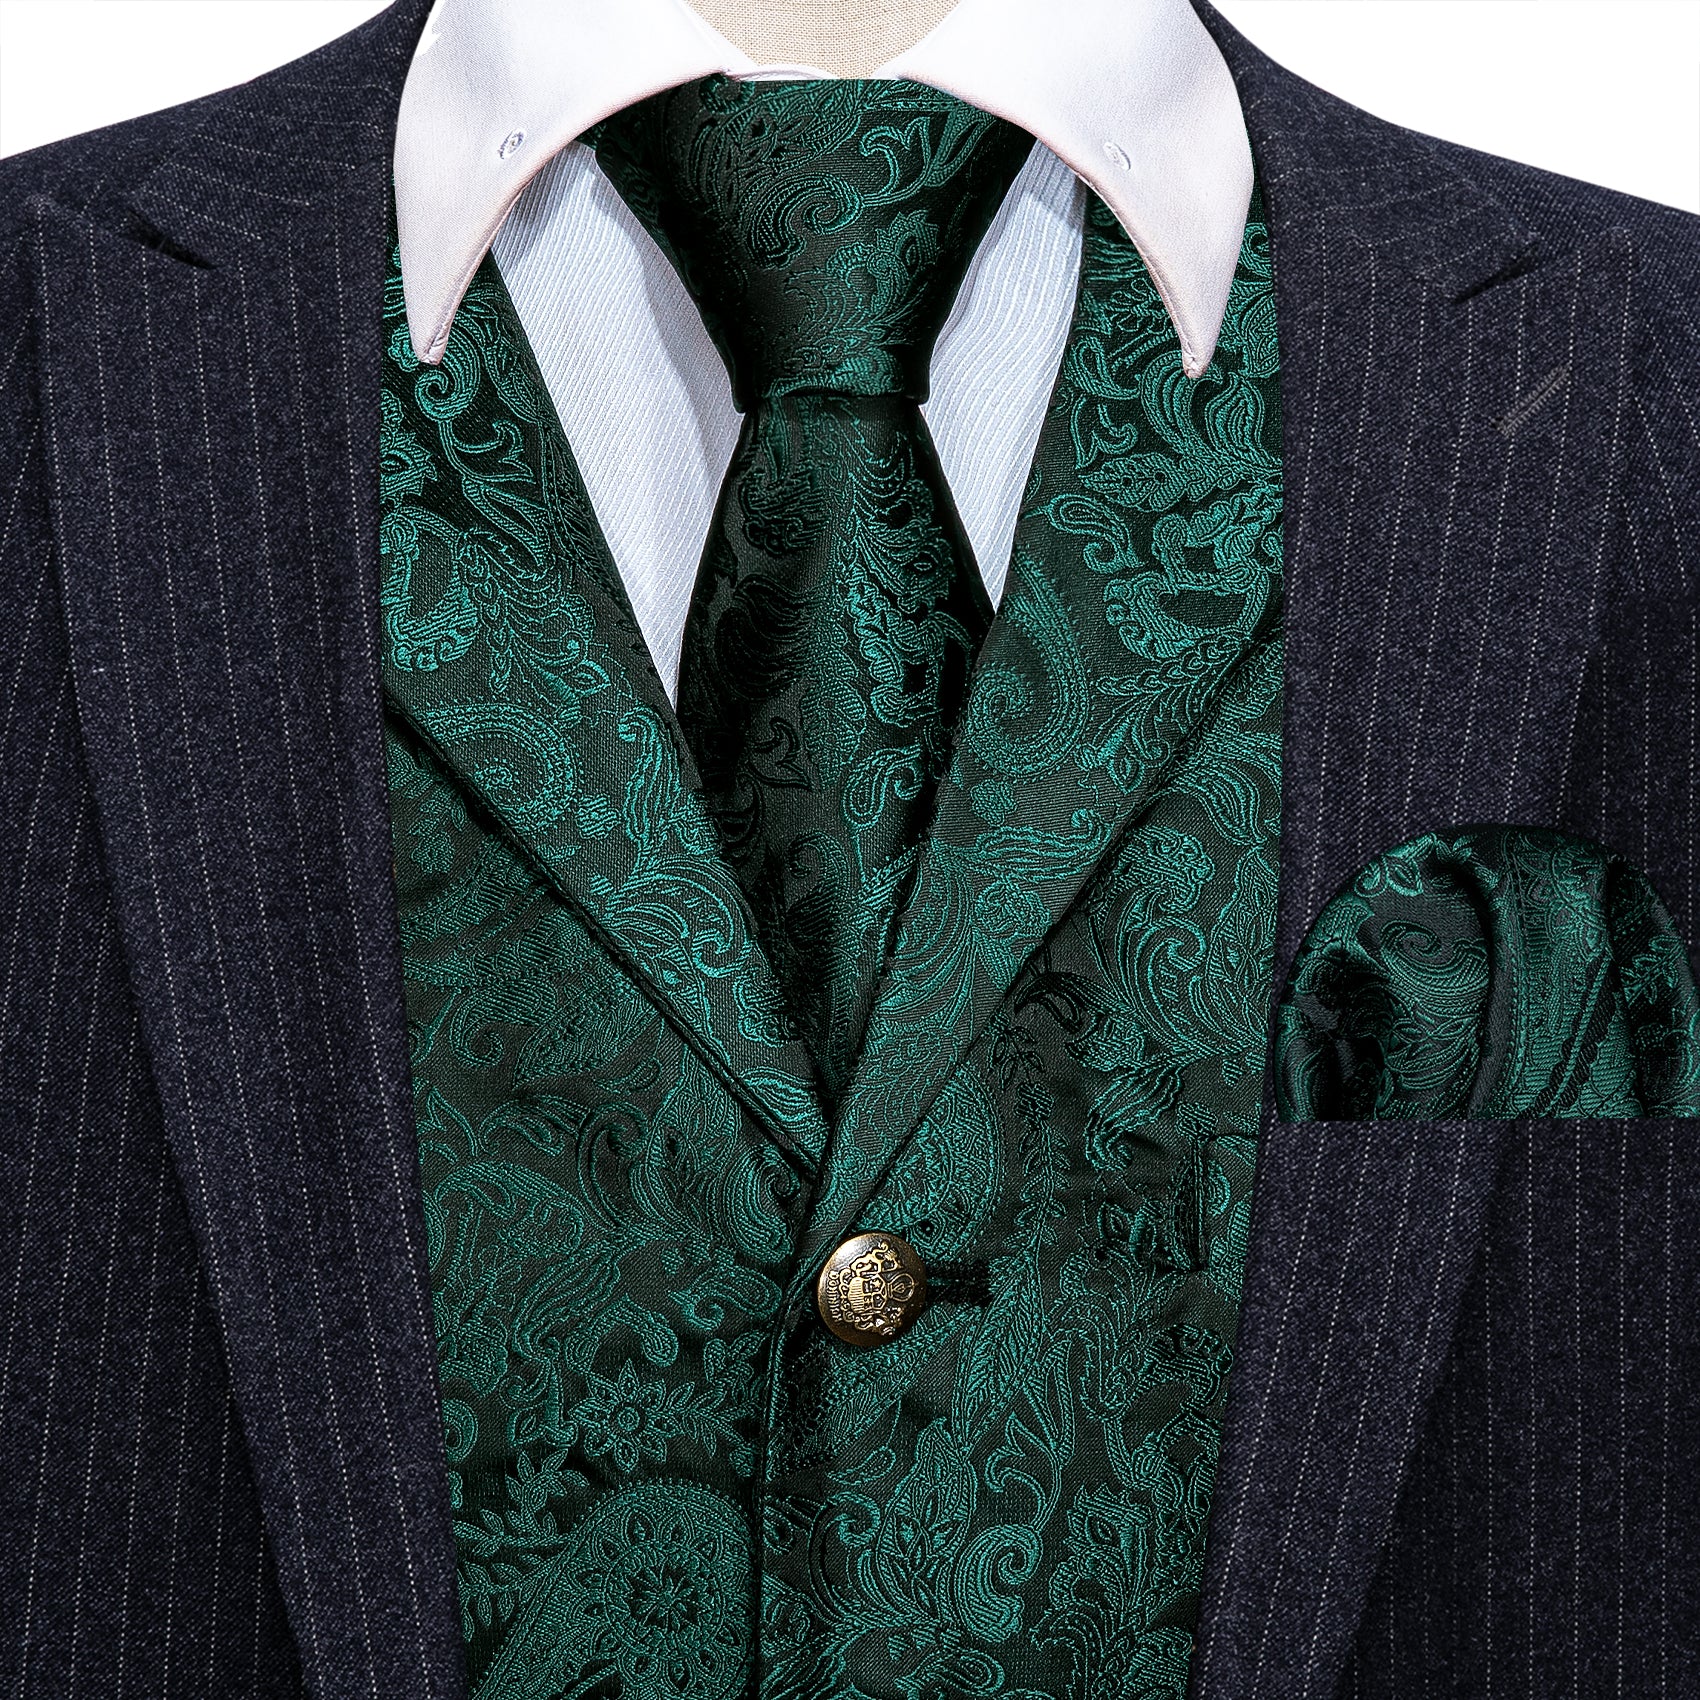 Barry.wang Men's Vest Green Paisley Silk Vest Tie Hanky Cufflinks Set